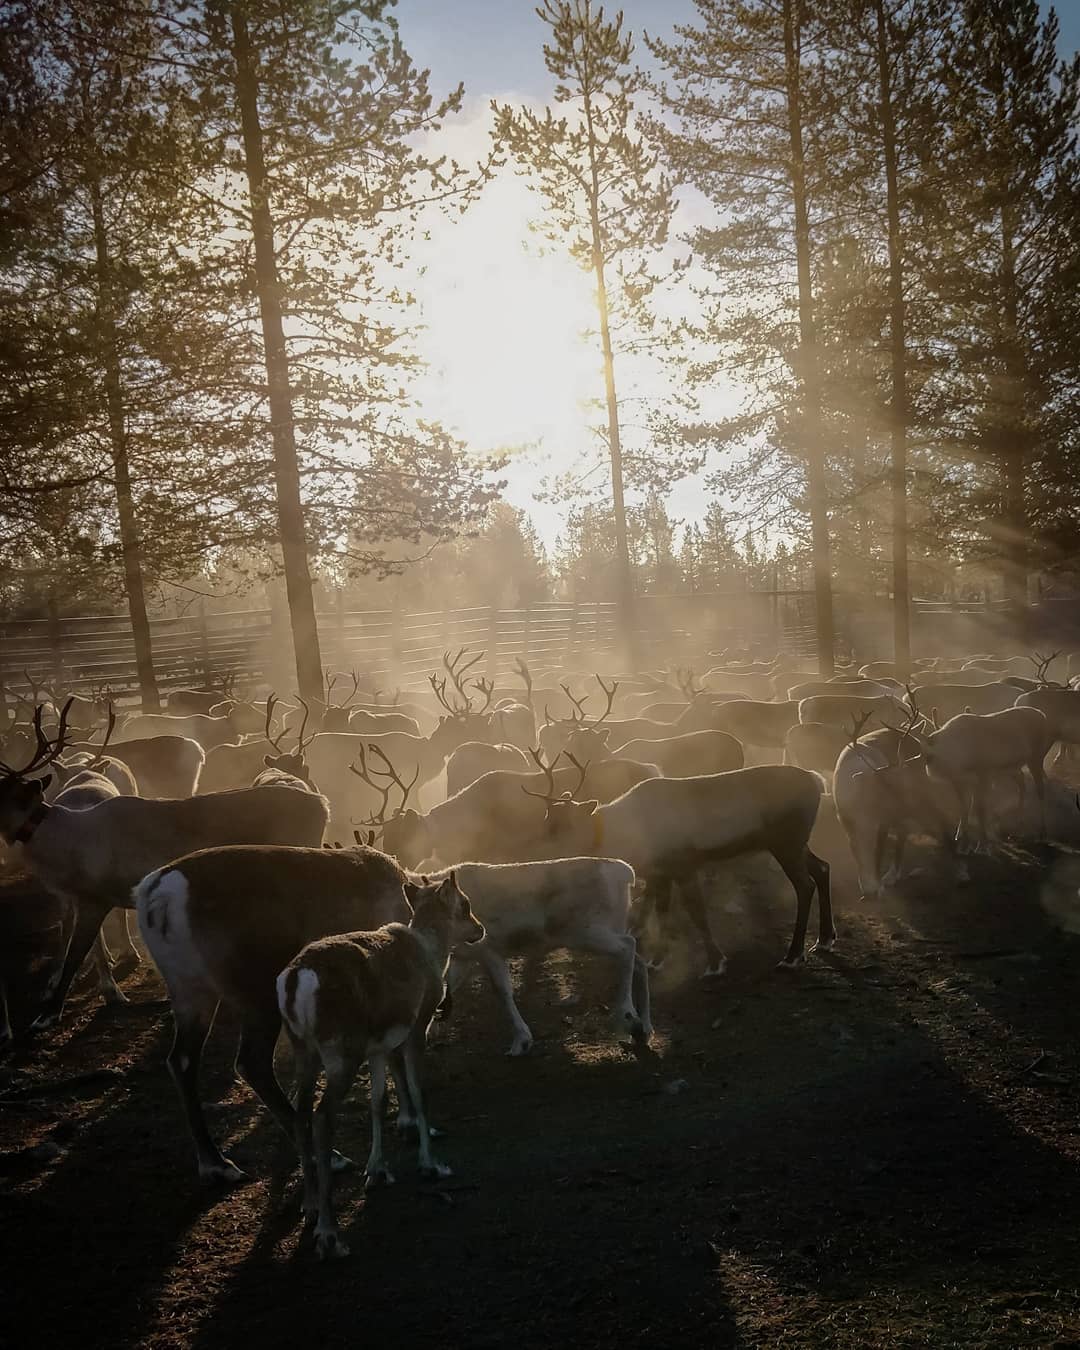 Reindeer herding in Lapland- IIda aletta Salla story of reindeer farm in Lapland Finland´Blog by Visit Lapland